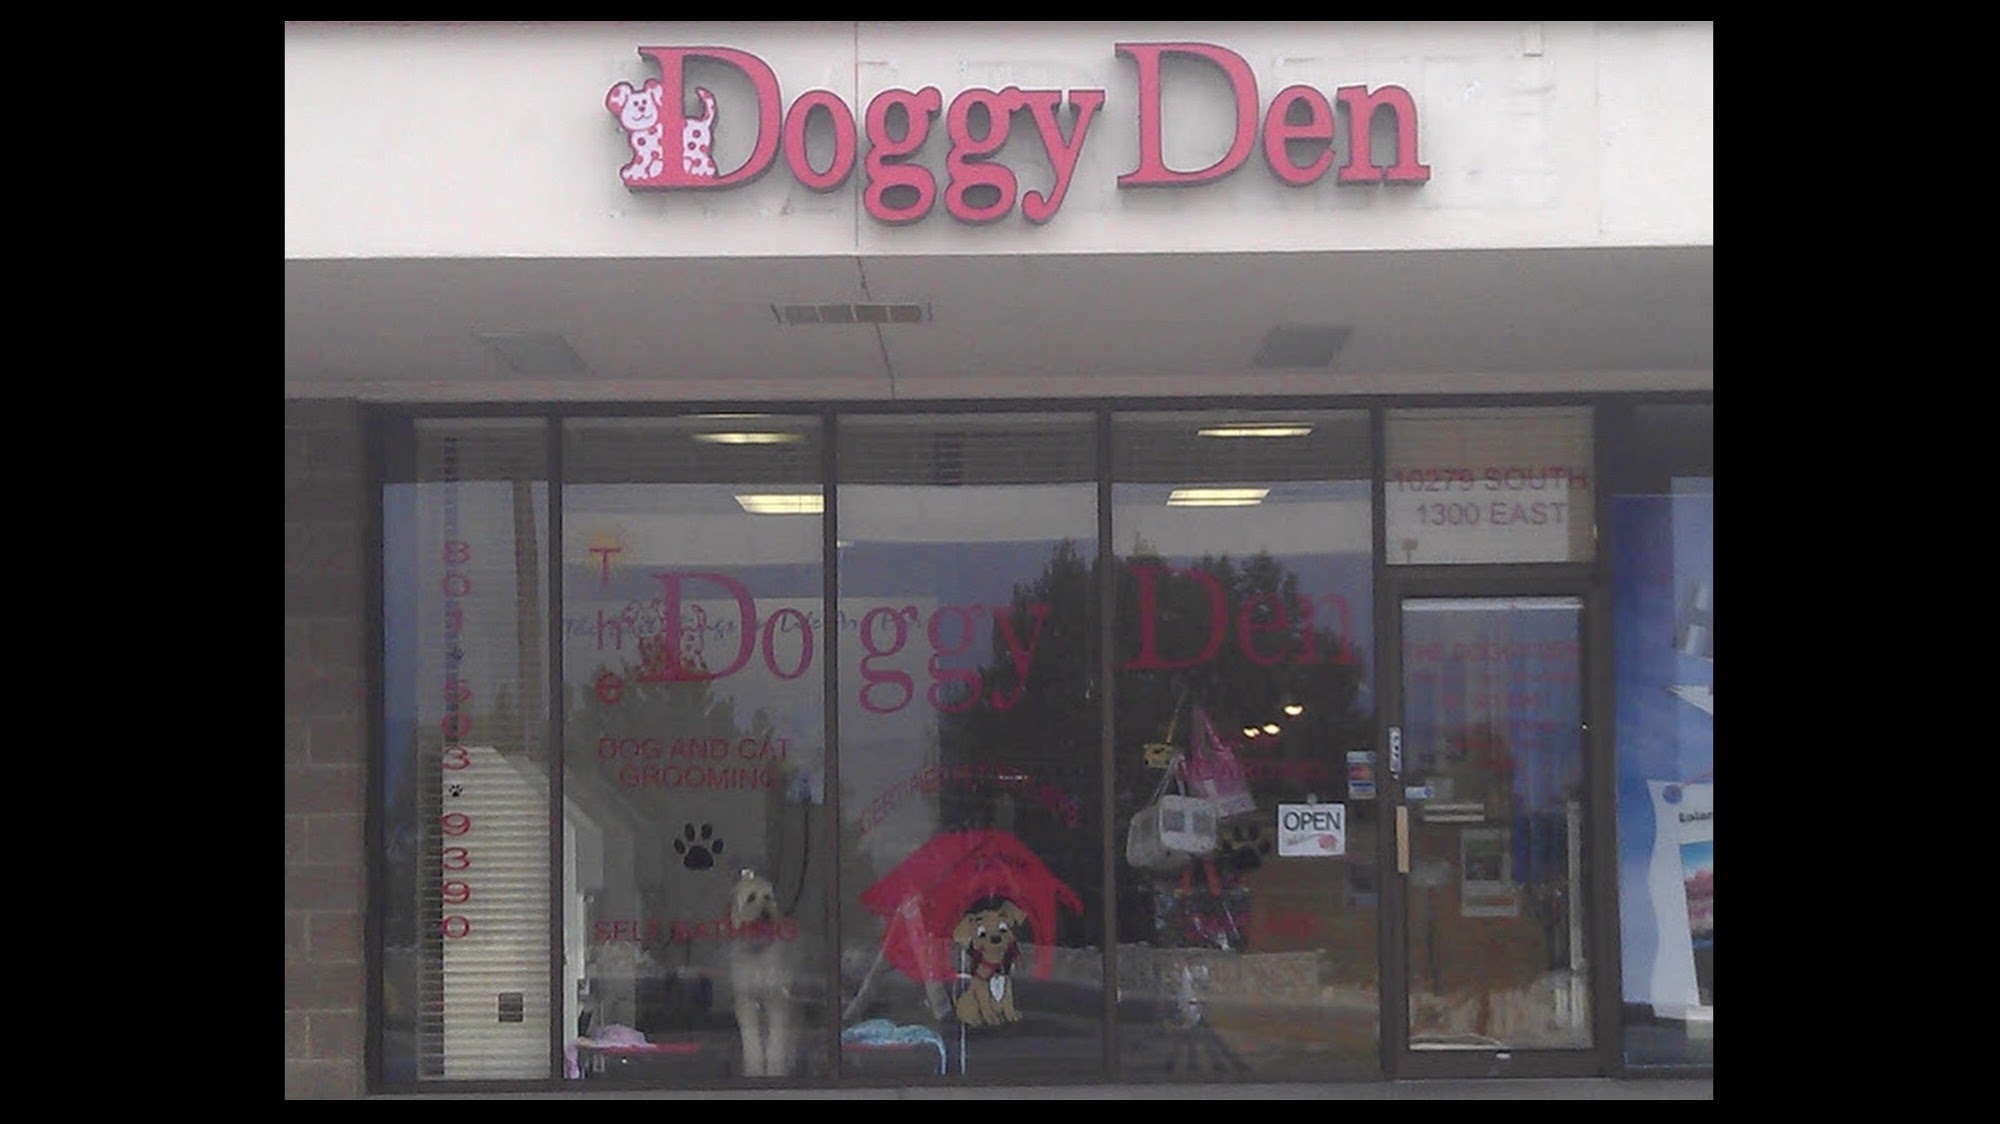 The Doggy Den